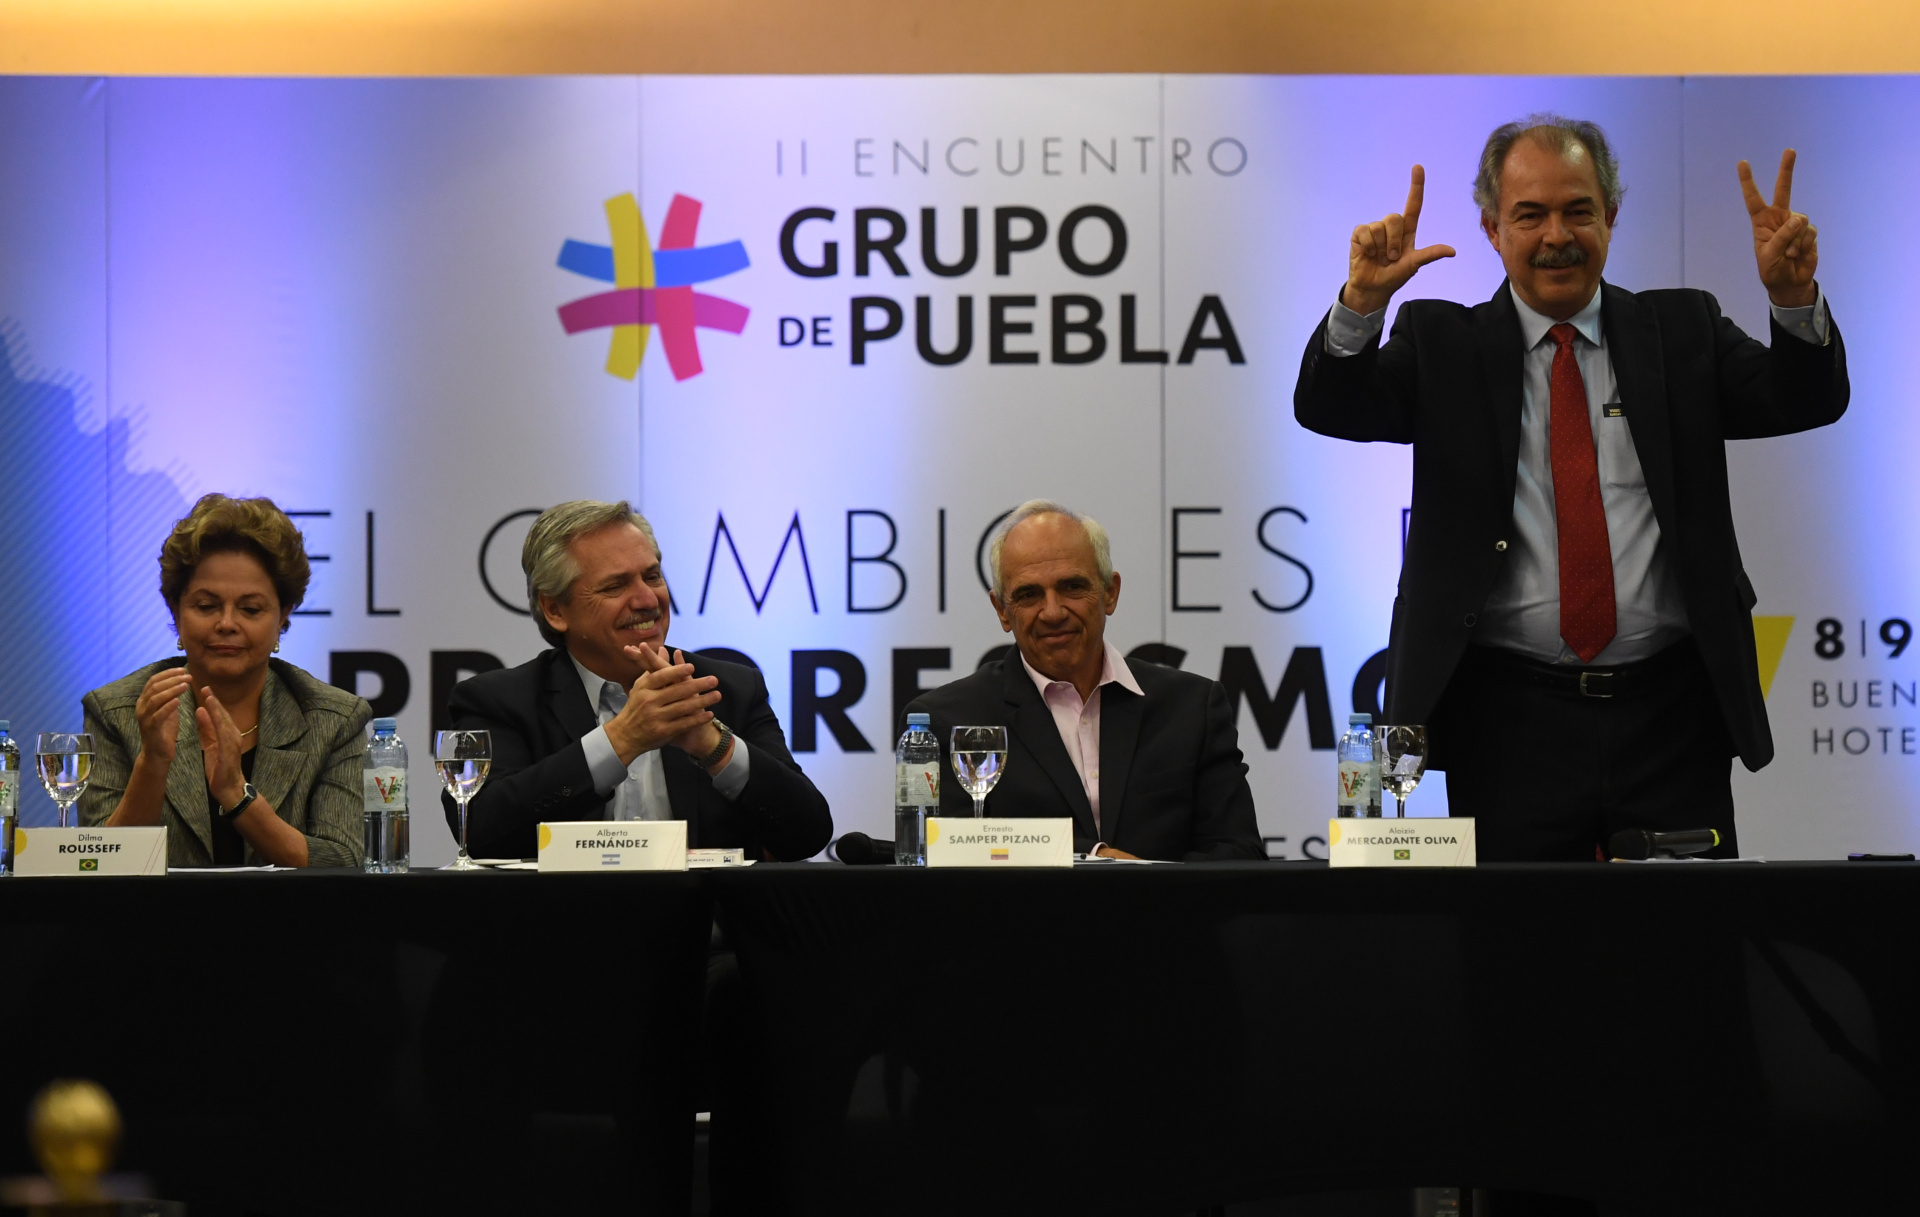 Una de las reuniones del Grupo de Puebla. Alberto Fernández, la brasileña Dilma Rousseff y un apoyo a Lula Da Silva. (Foto Maximiliano Luna)